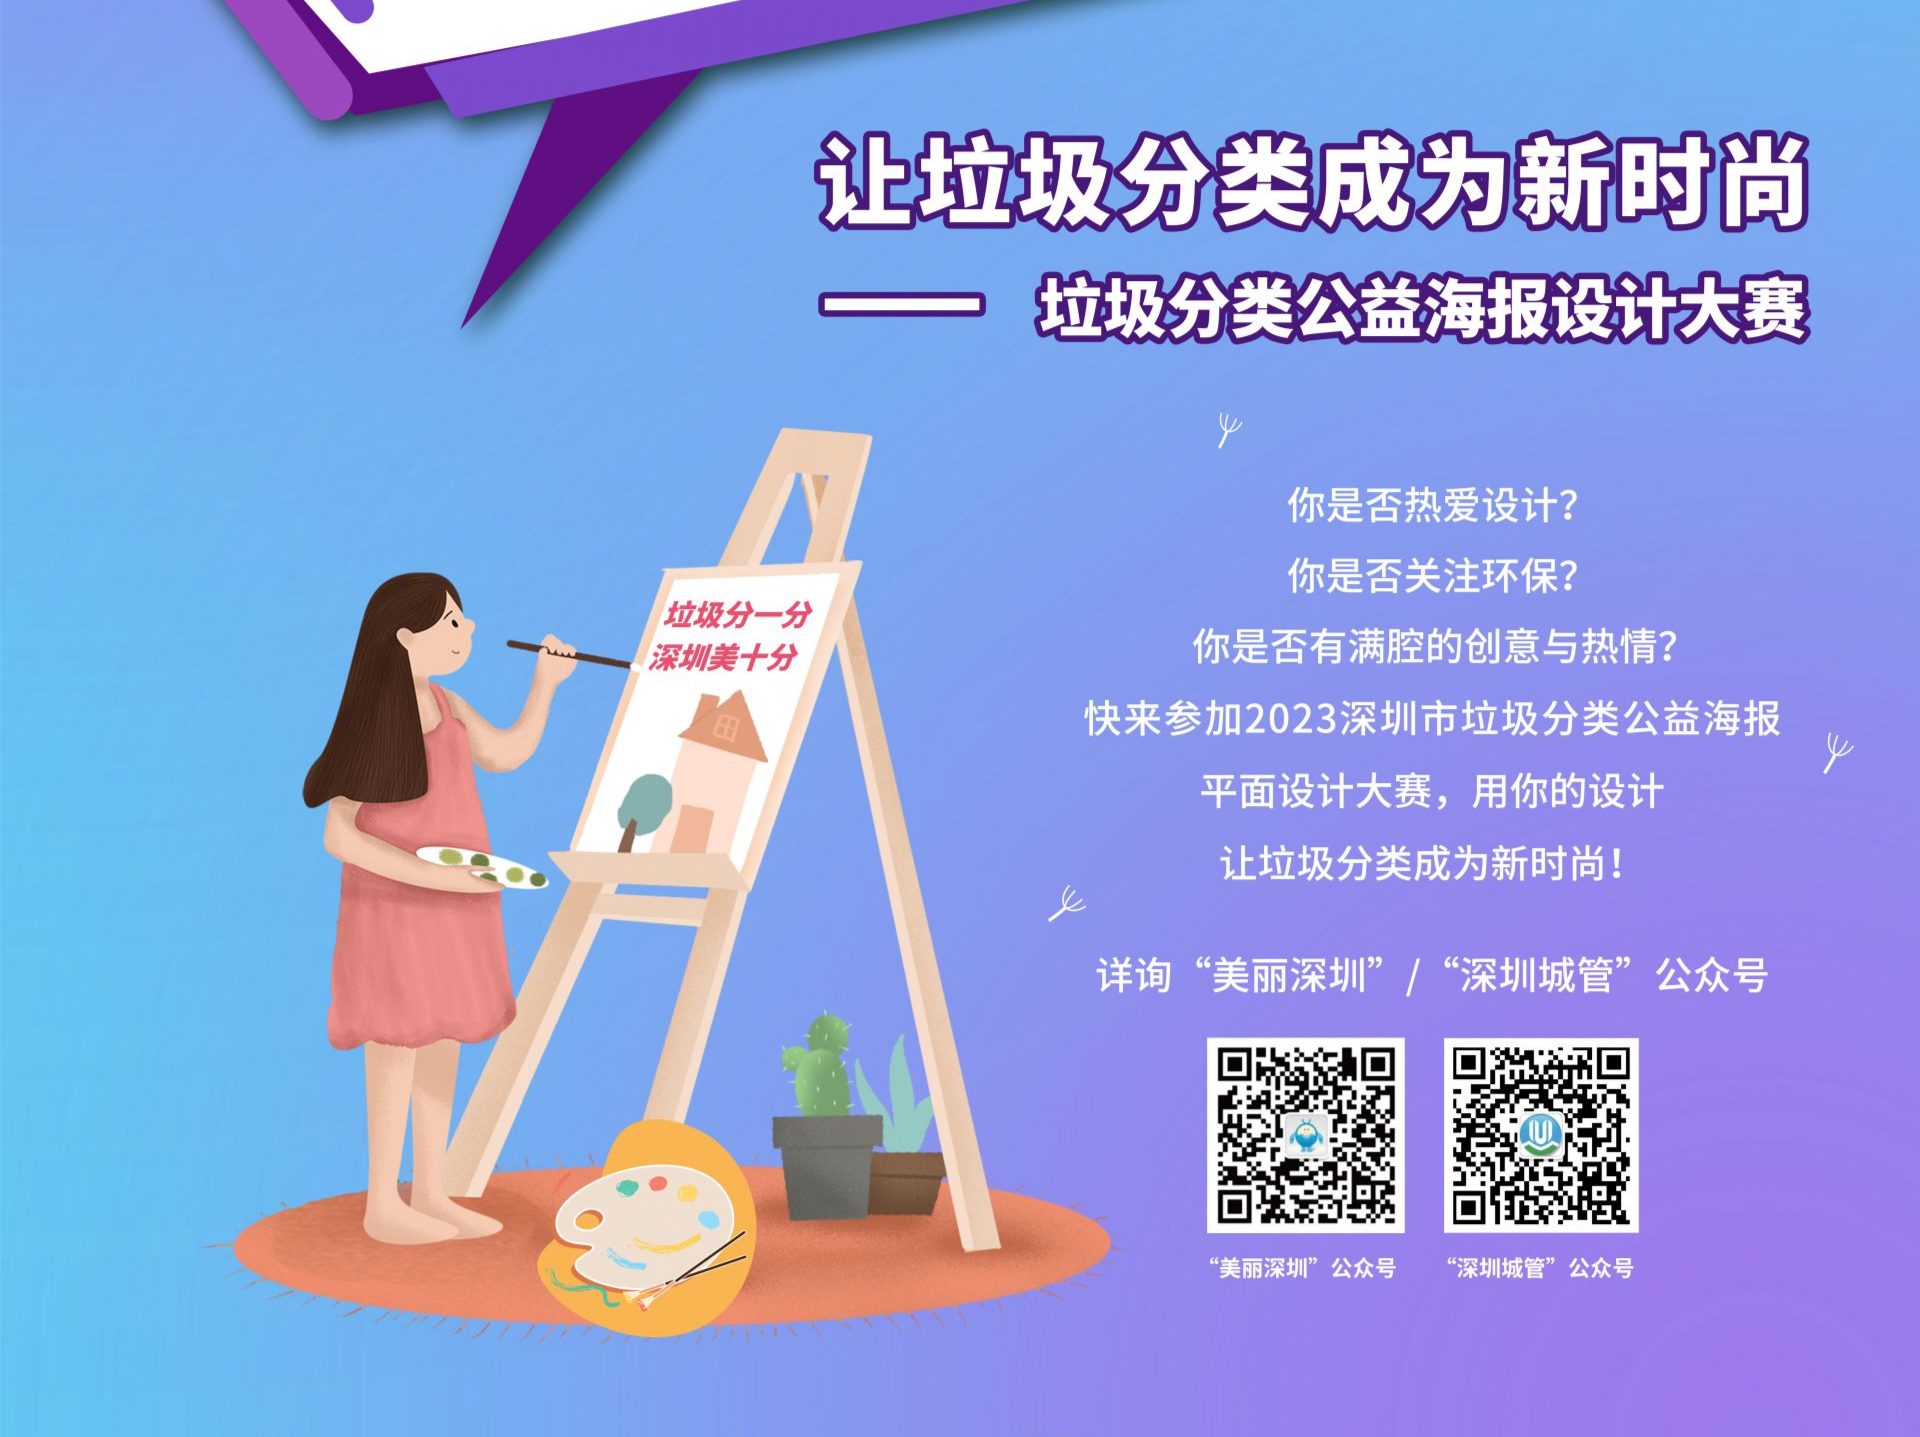 公益海报 | 深圳垃圾分类公益海报设计大赛